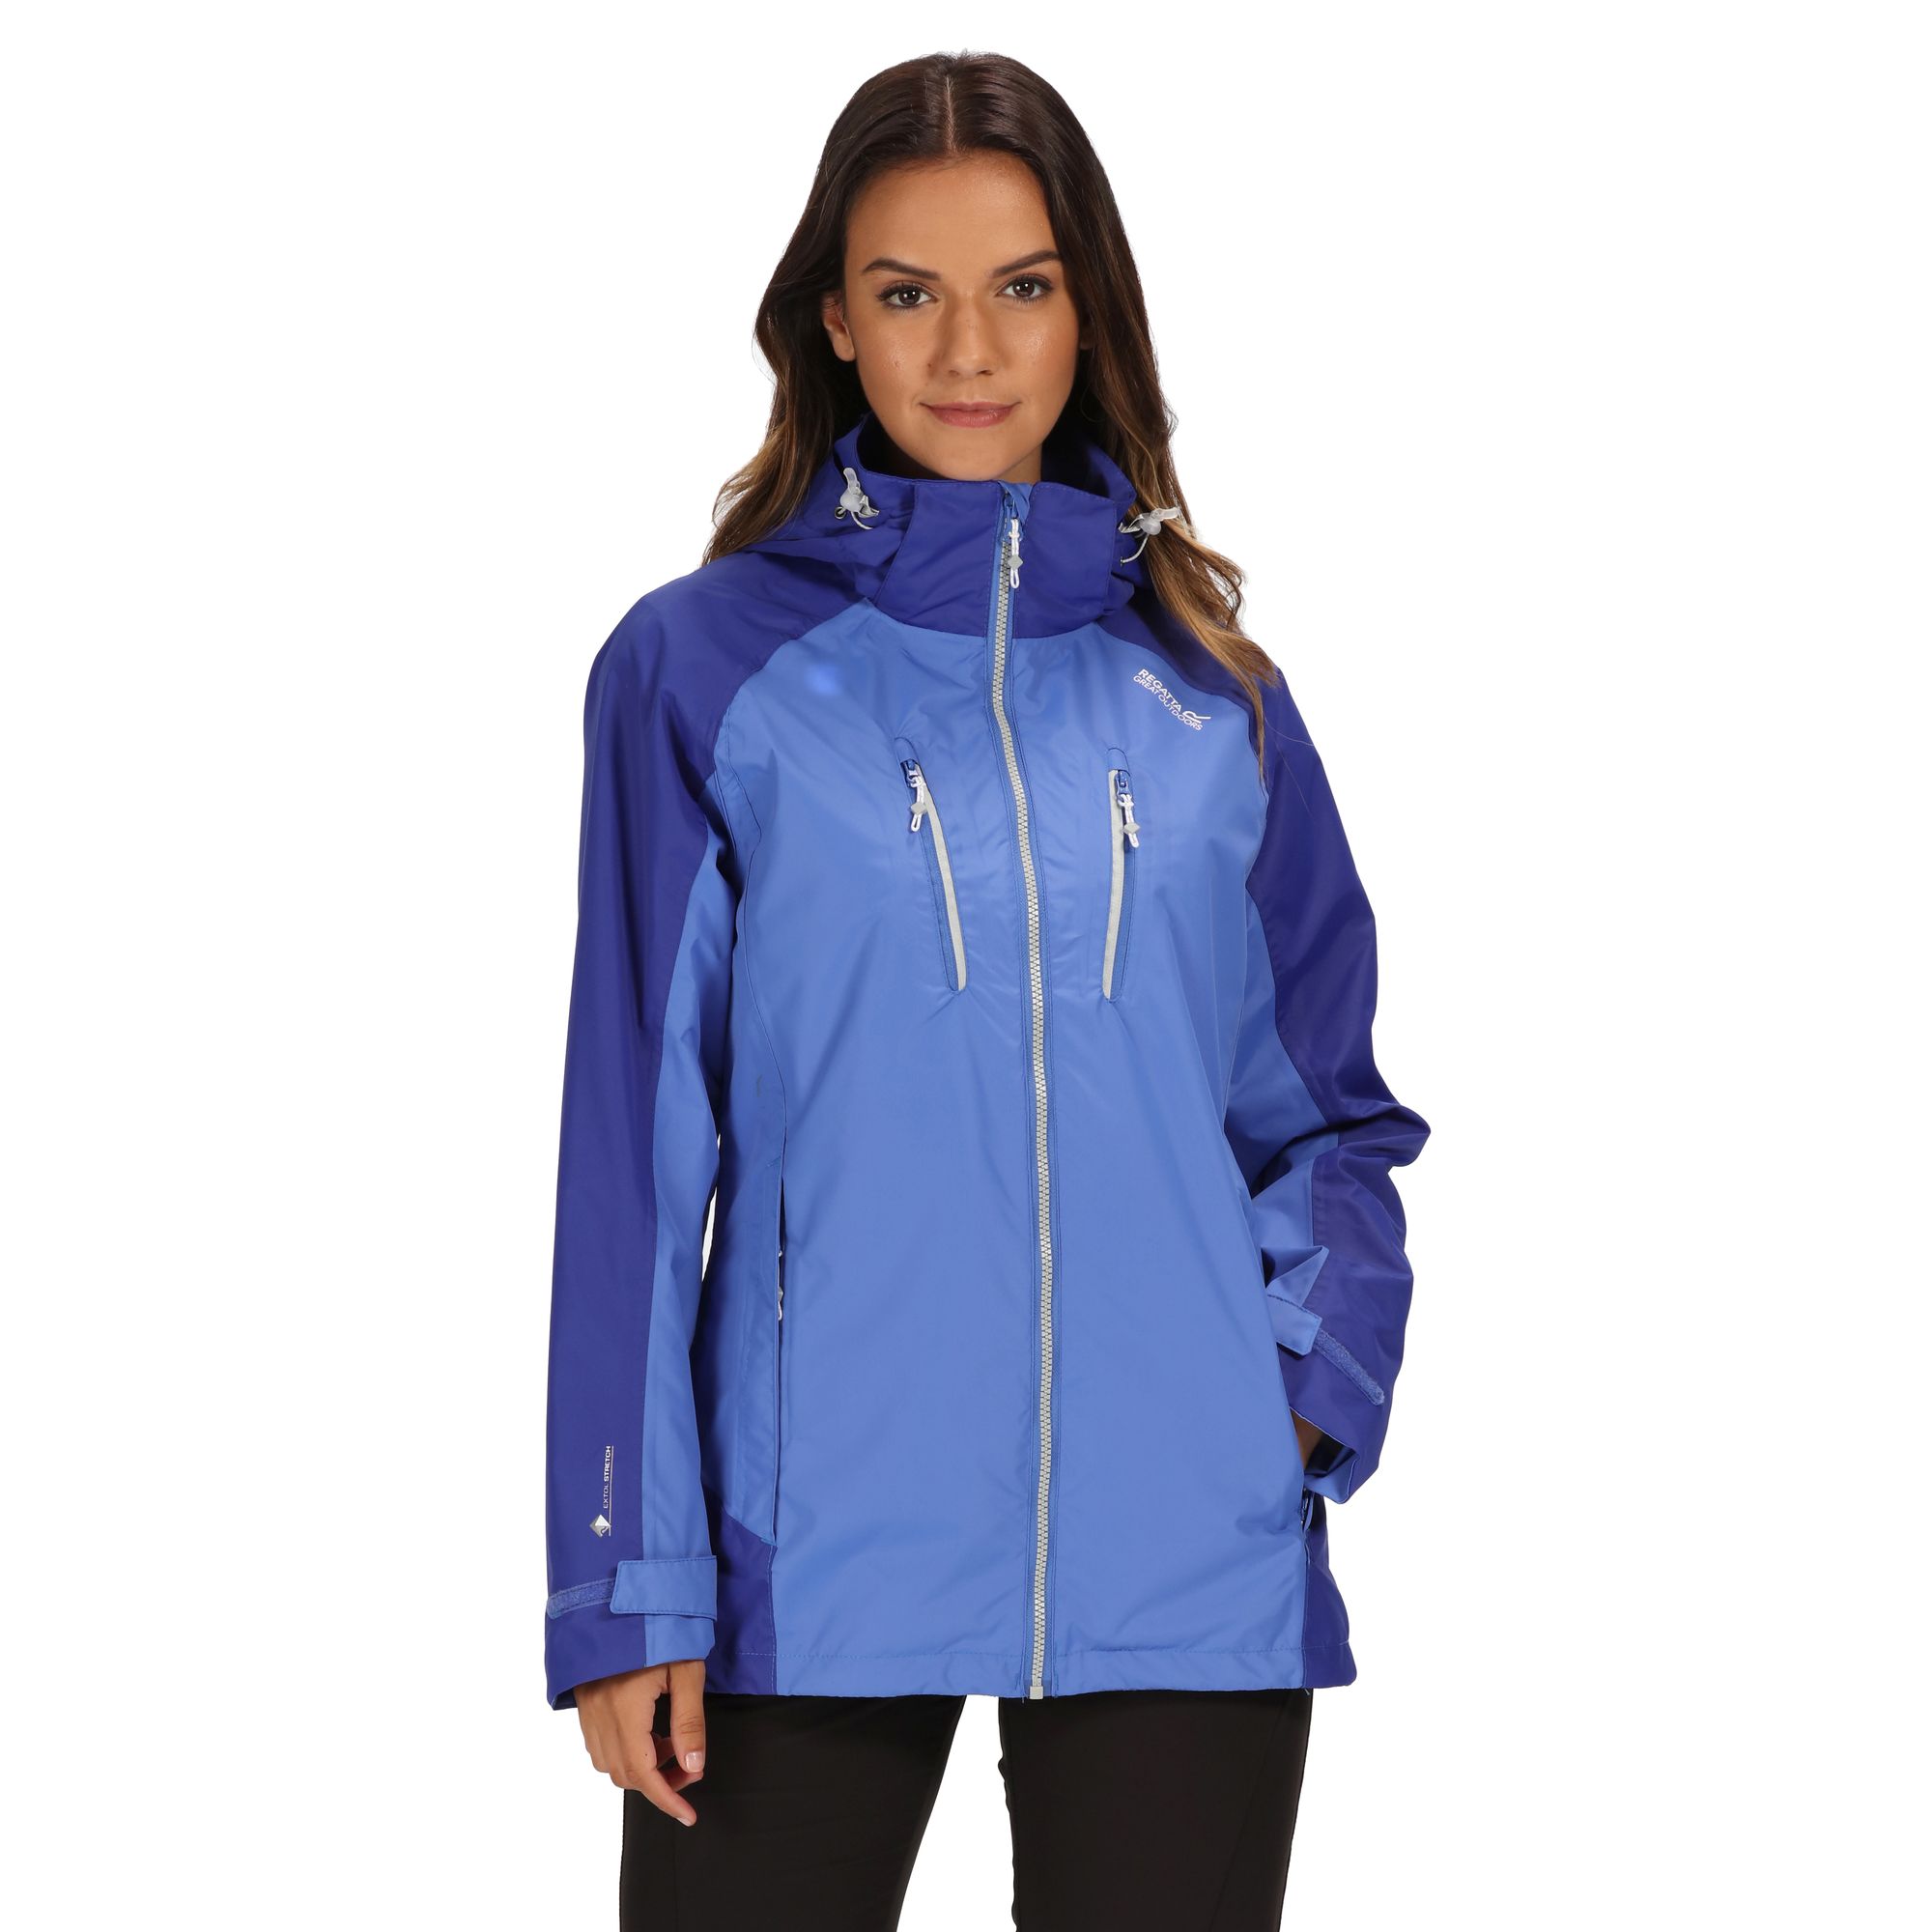 Regatta Calderdale III Womens Waterproof Jacket | eBay